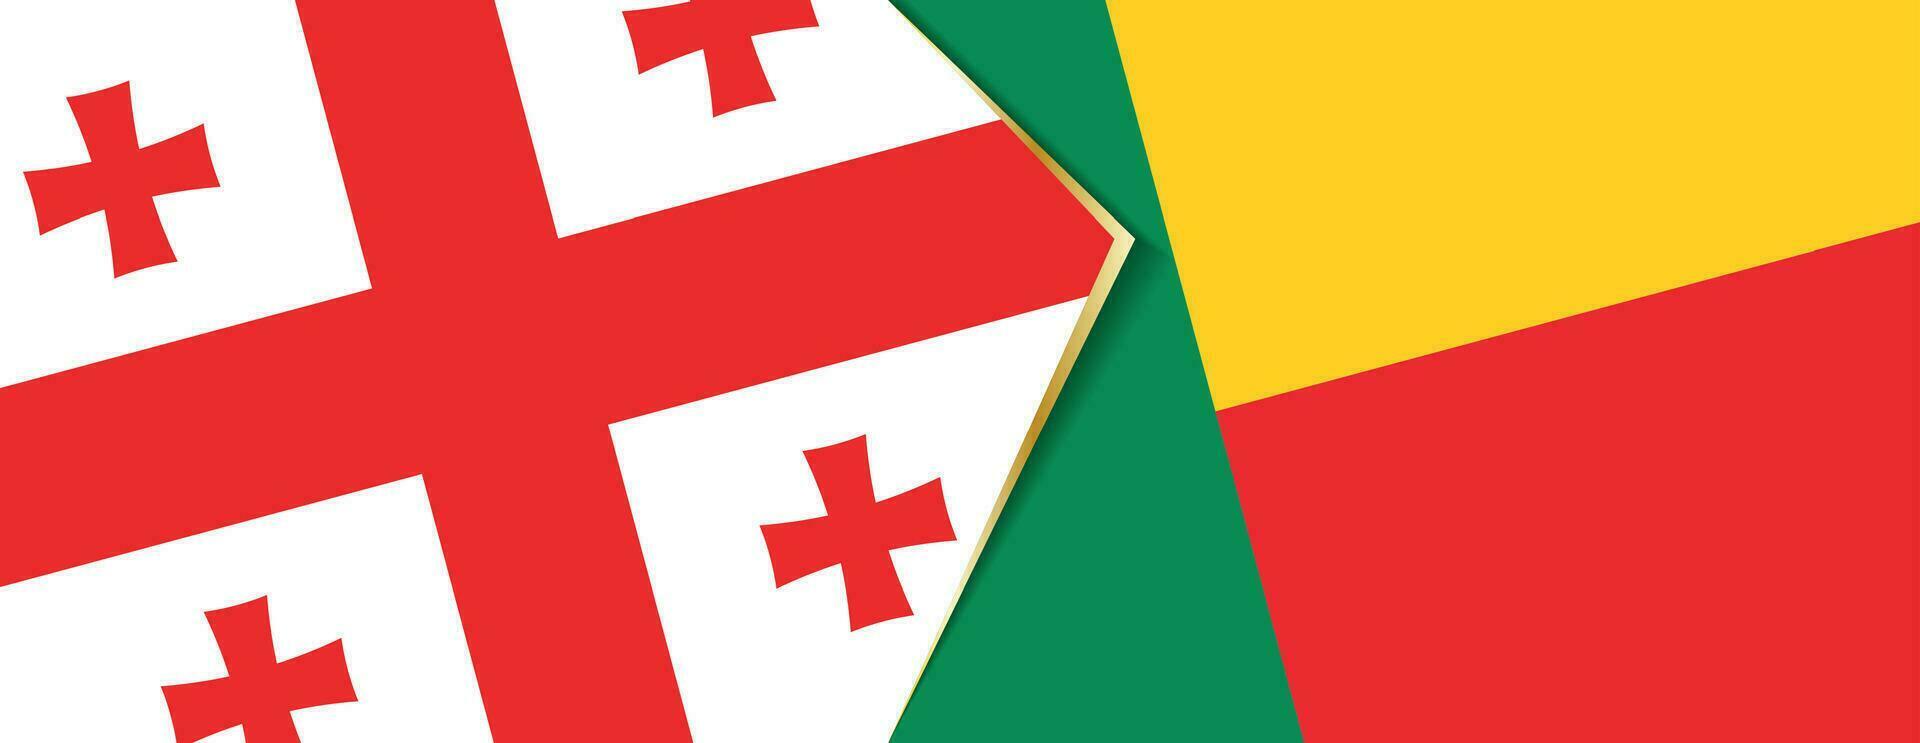 Georgia und Benin Flaggen, zwei Vektor Flaggen.